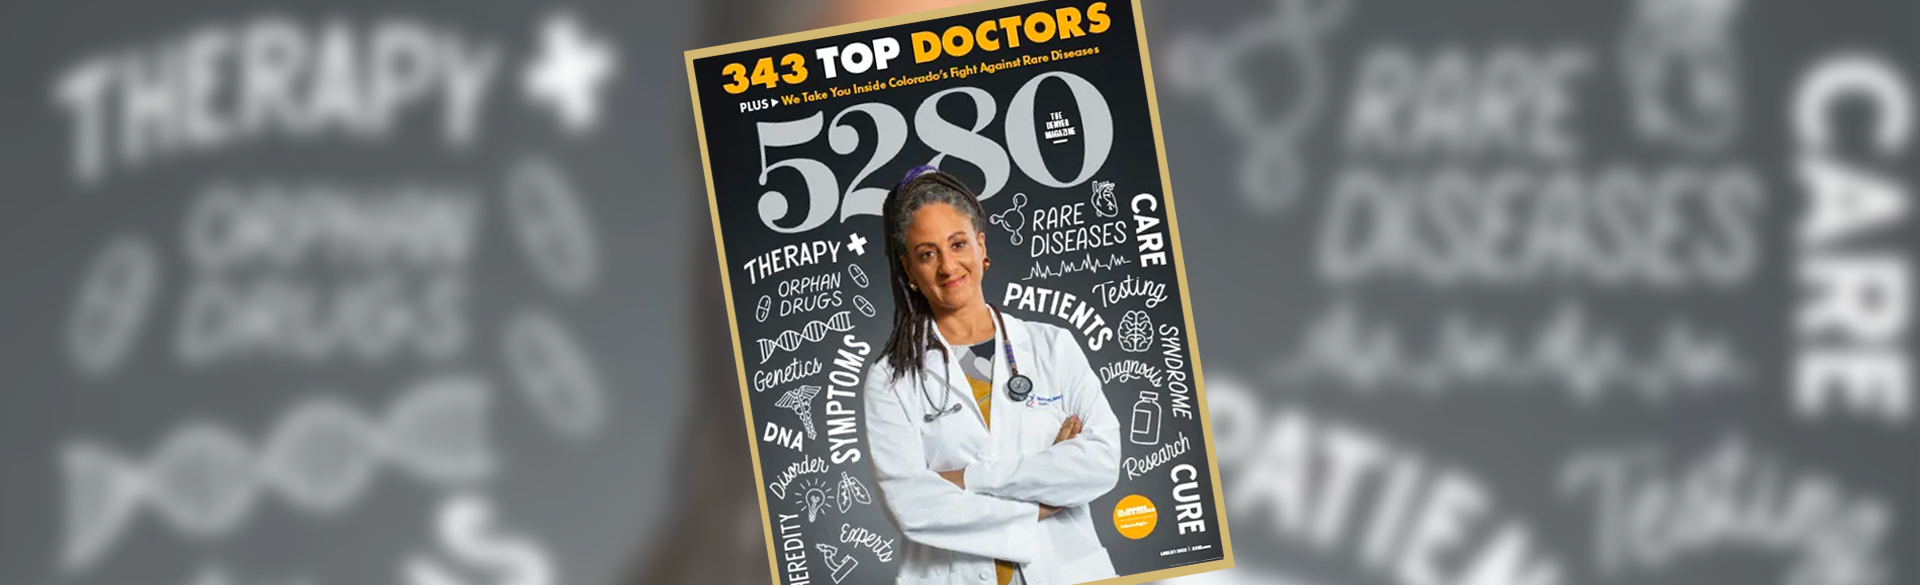 5280 Best Doctors